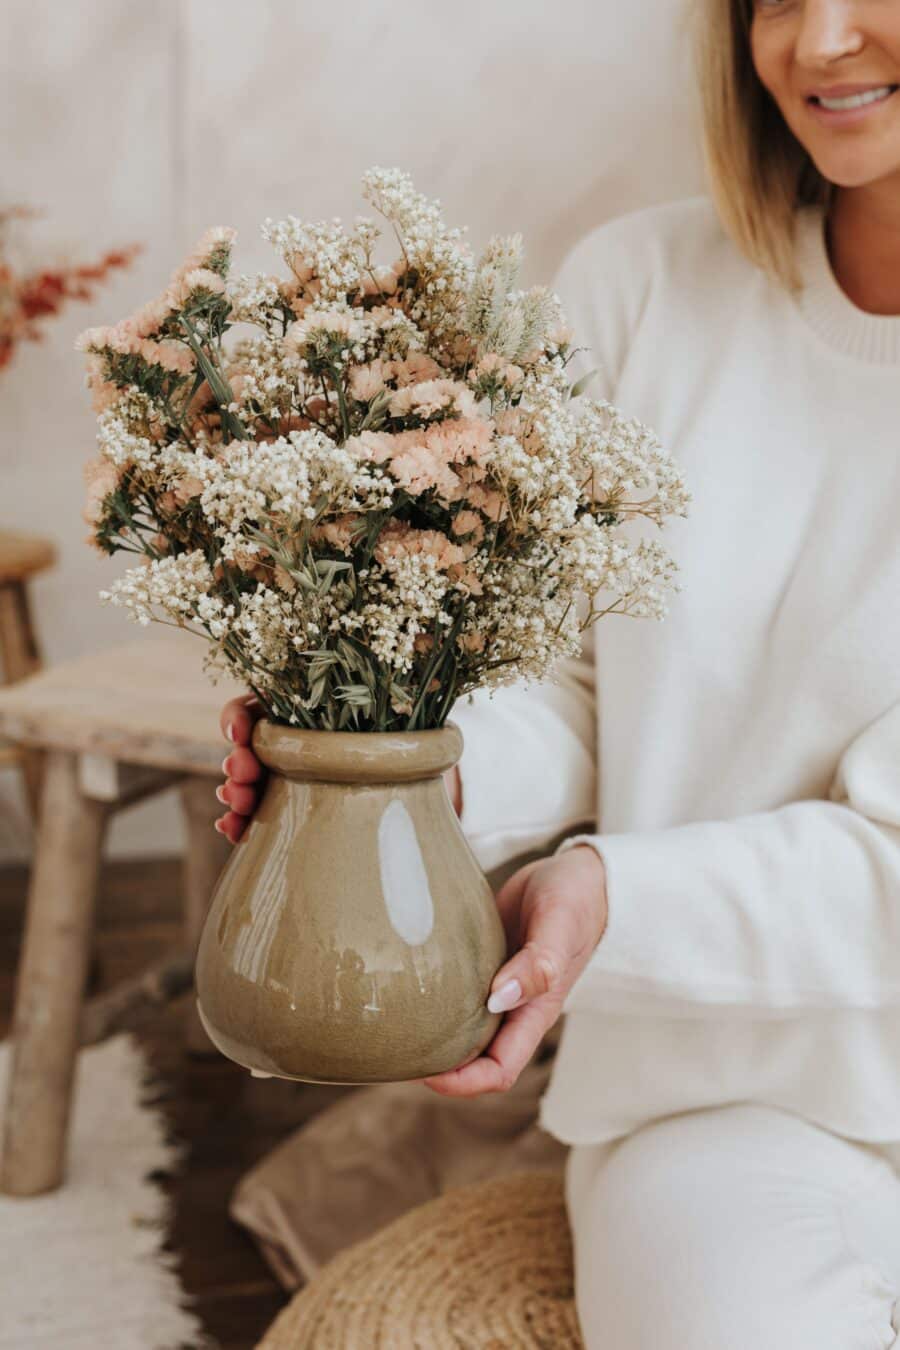 Haz que el regalo para mamá sea aún más especial con nuestras flores preservadas personalizadas. ¡Haz clic y crea un regalo único y memorable para el Día de la Madre!